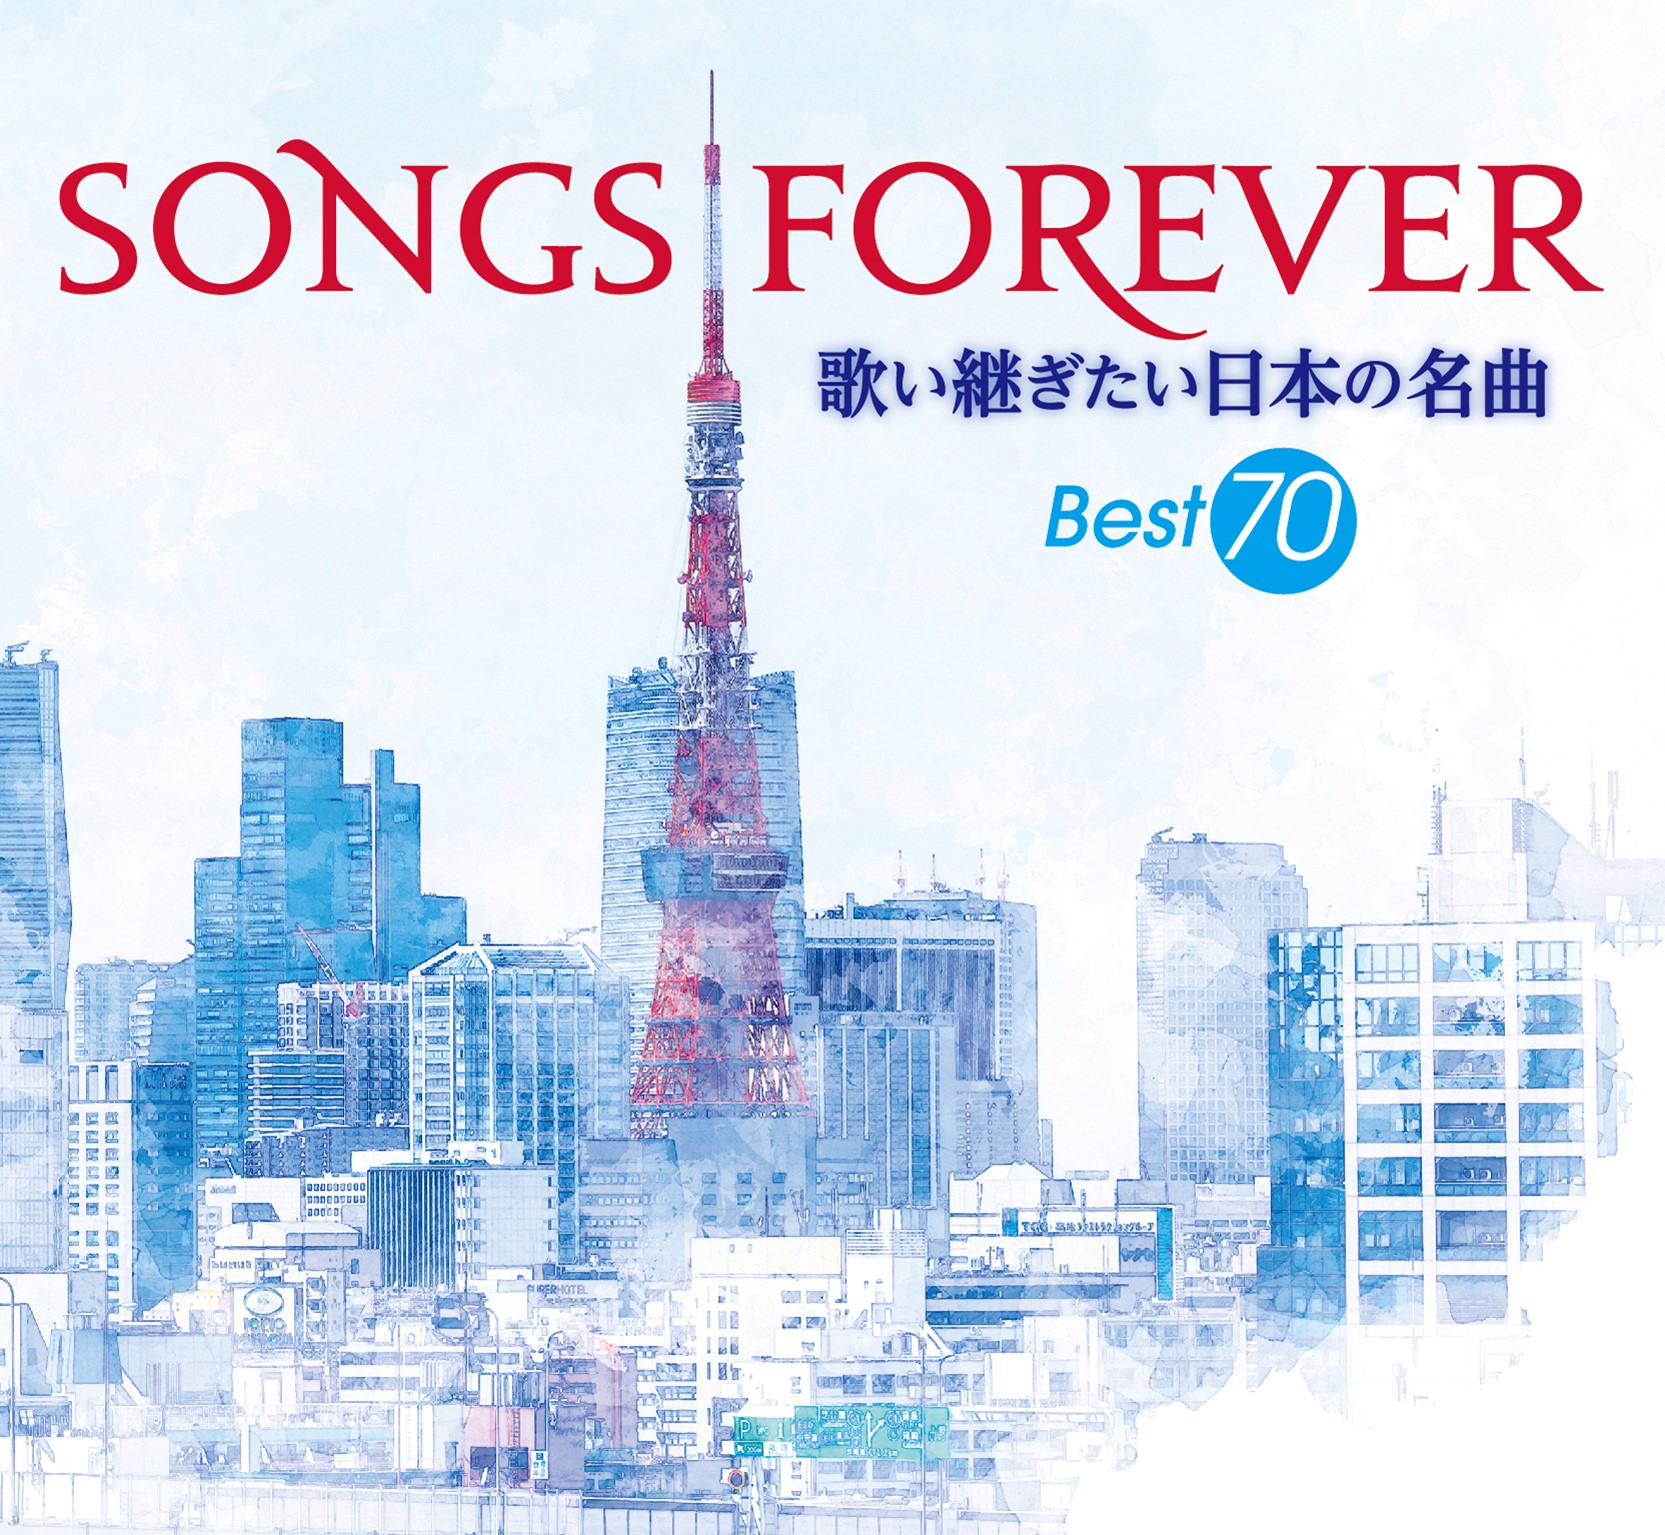 昭和名曲カバー集 Songs Forever 歌い継ぎたい日本の名曲 Bs 音楽のある風景 にて放送 販売開始 Music Guide ミュージックガイド